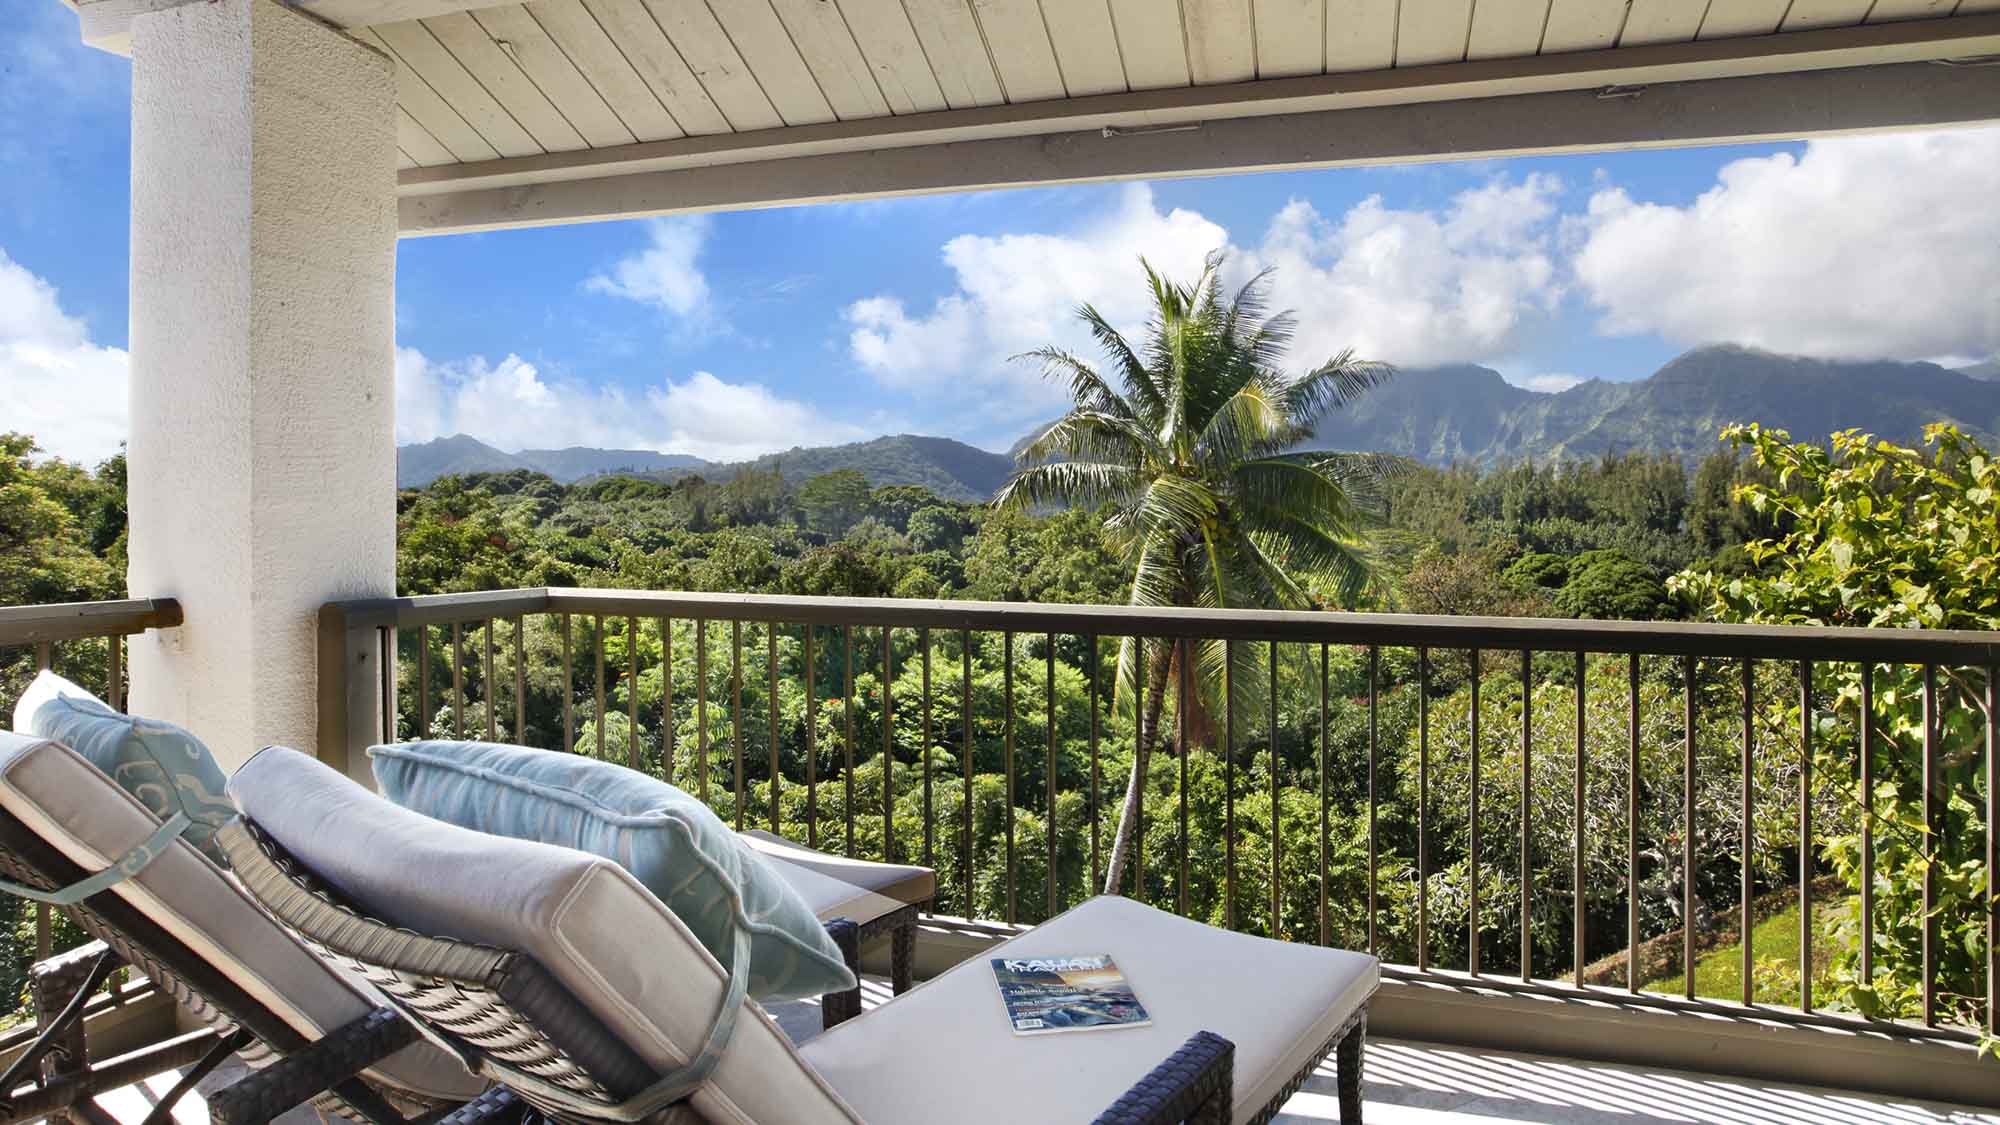 Hanalei Bay Resort #15378 - Mountain & Waterfall View Bedroom Lounging Lanai - Parrish Kauai